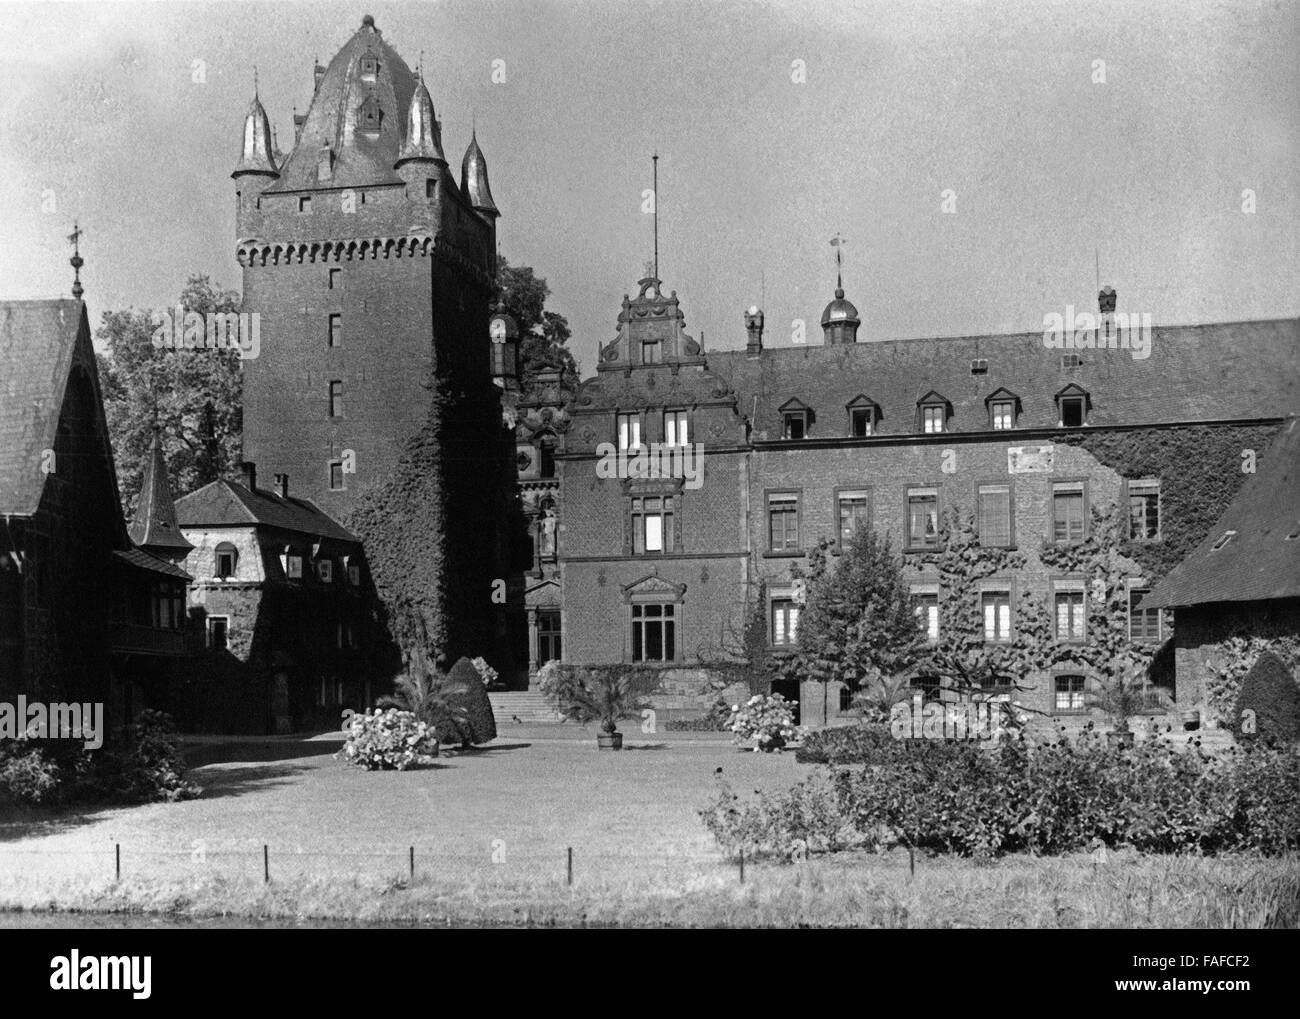 Das Wasserschloss in Morken Harff, Einem Stadtteil von Bedburg Im Erftkreis, Deutschland 1920er Jahre Harff. Schloss Harff Schloss Morken Harff in der Nähe von Bedburg, Deutschland der 1920er Jahre. Stockfoto